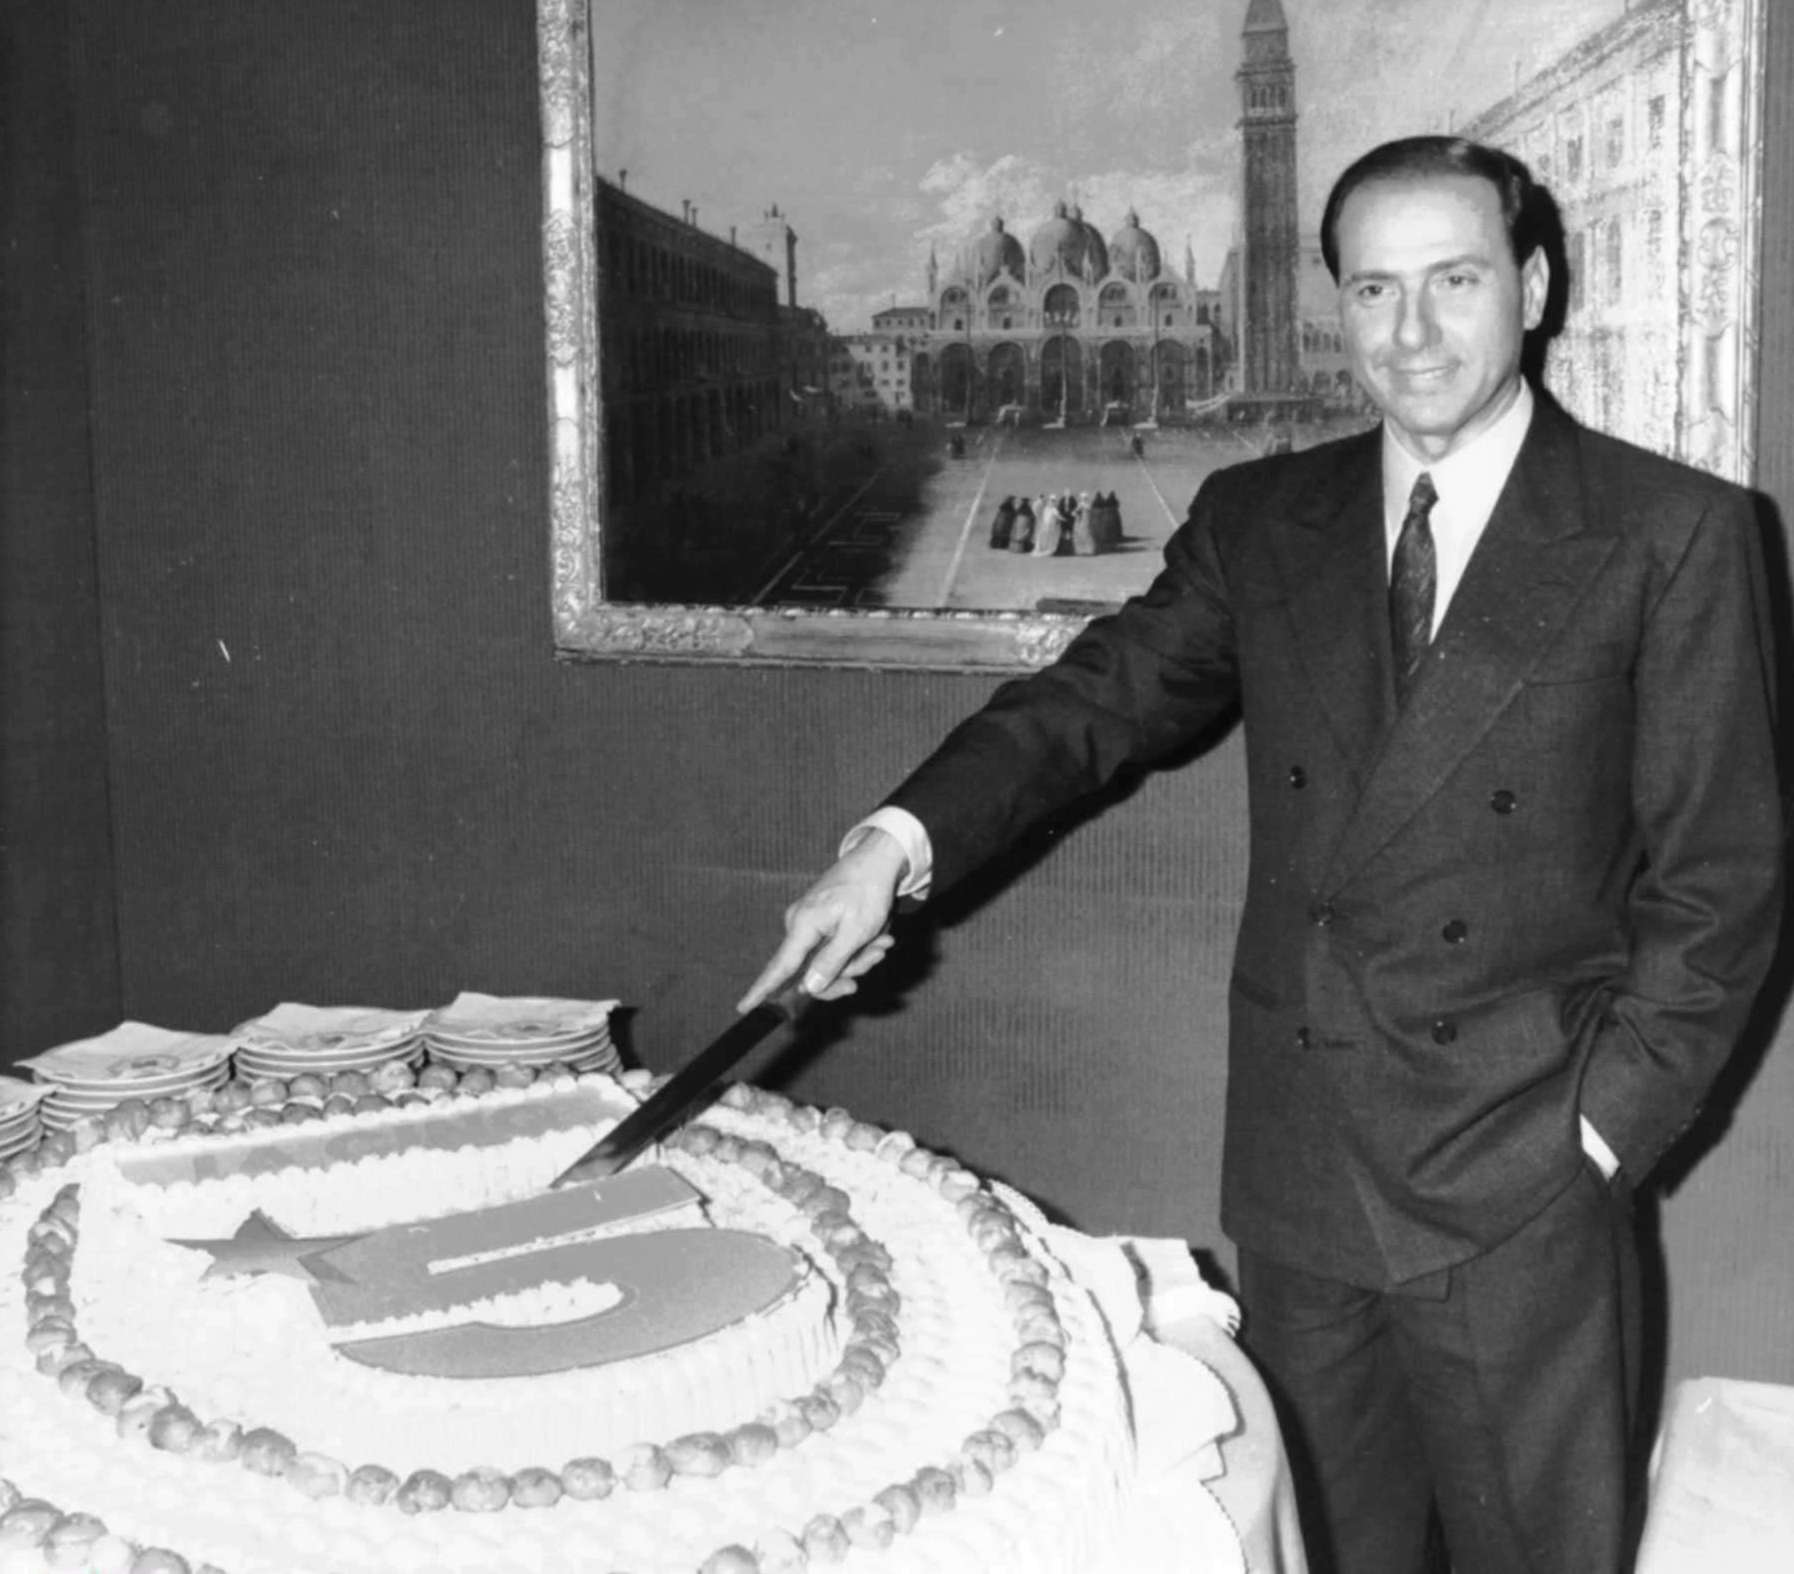 Silvio Berlusconi corta una tarta con la forma del logotipo de su cadena de televisión privada 